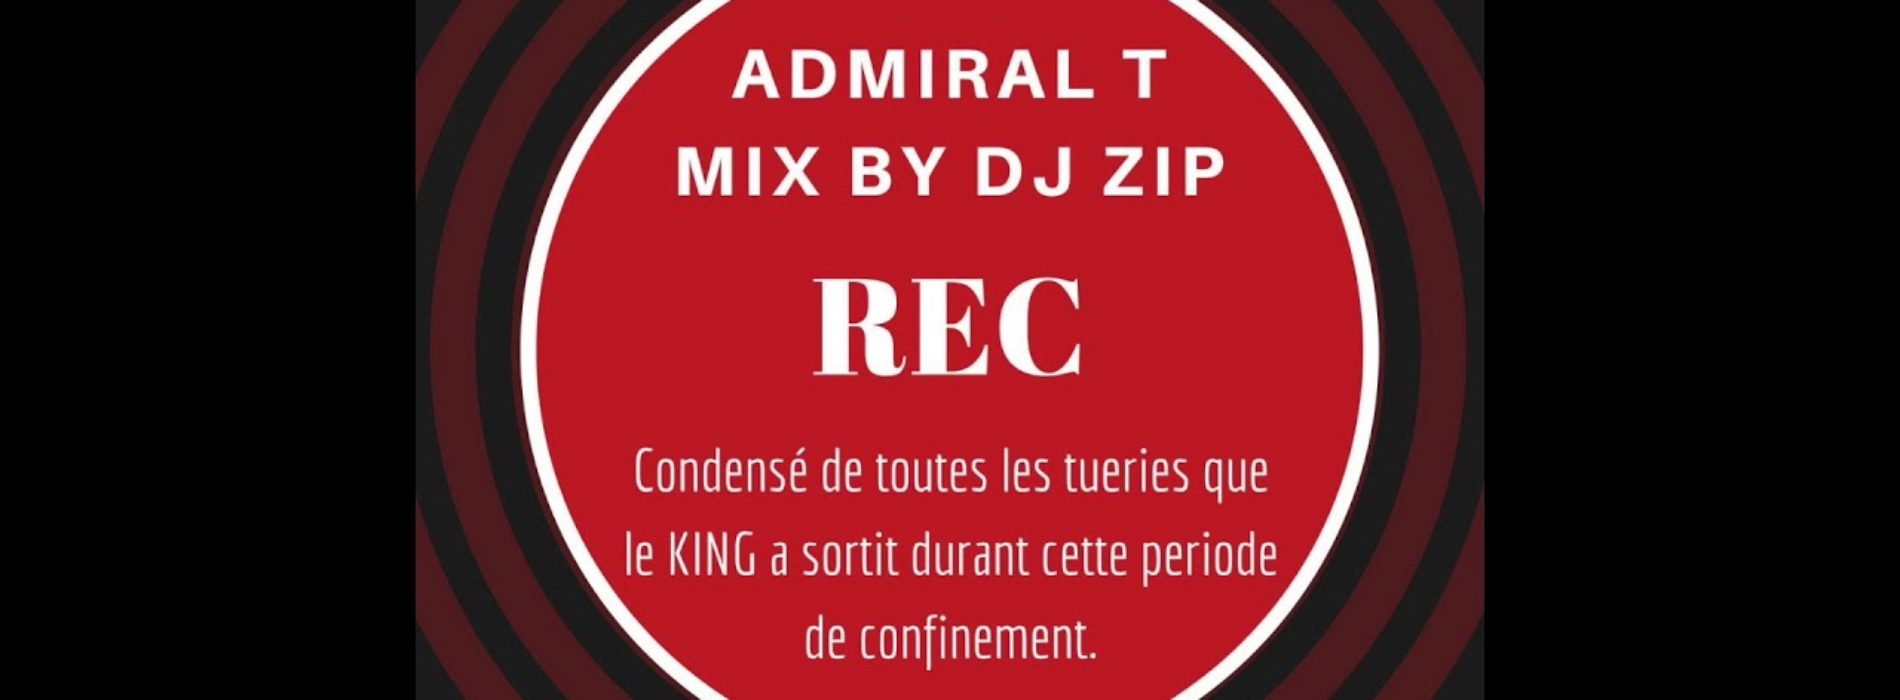 ADMIRAL T – Les REC de mon confinement mixés by Dj ZIP – Mai 2020